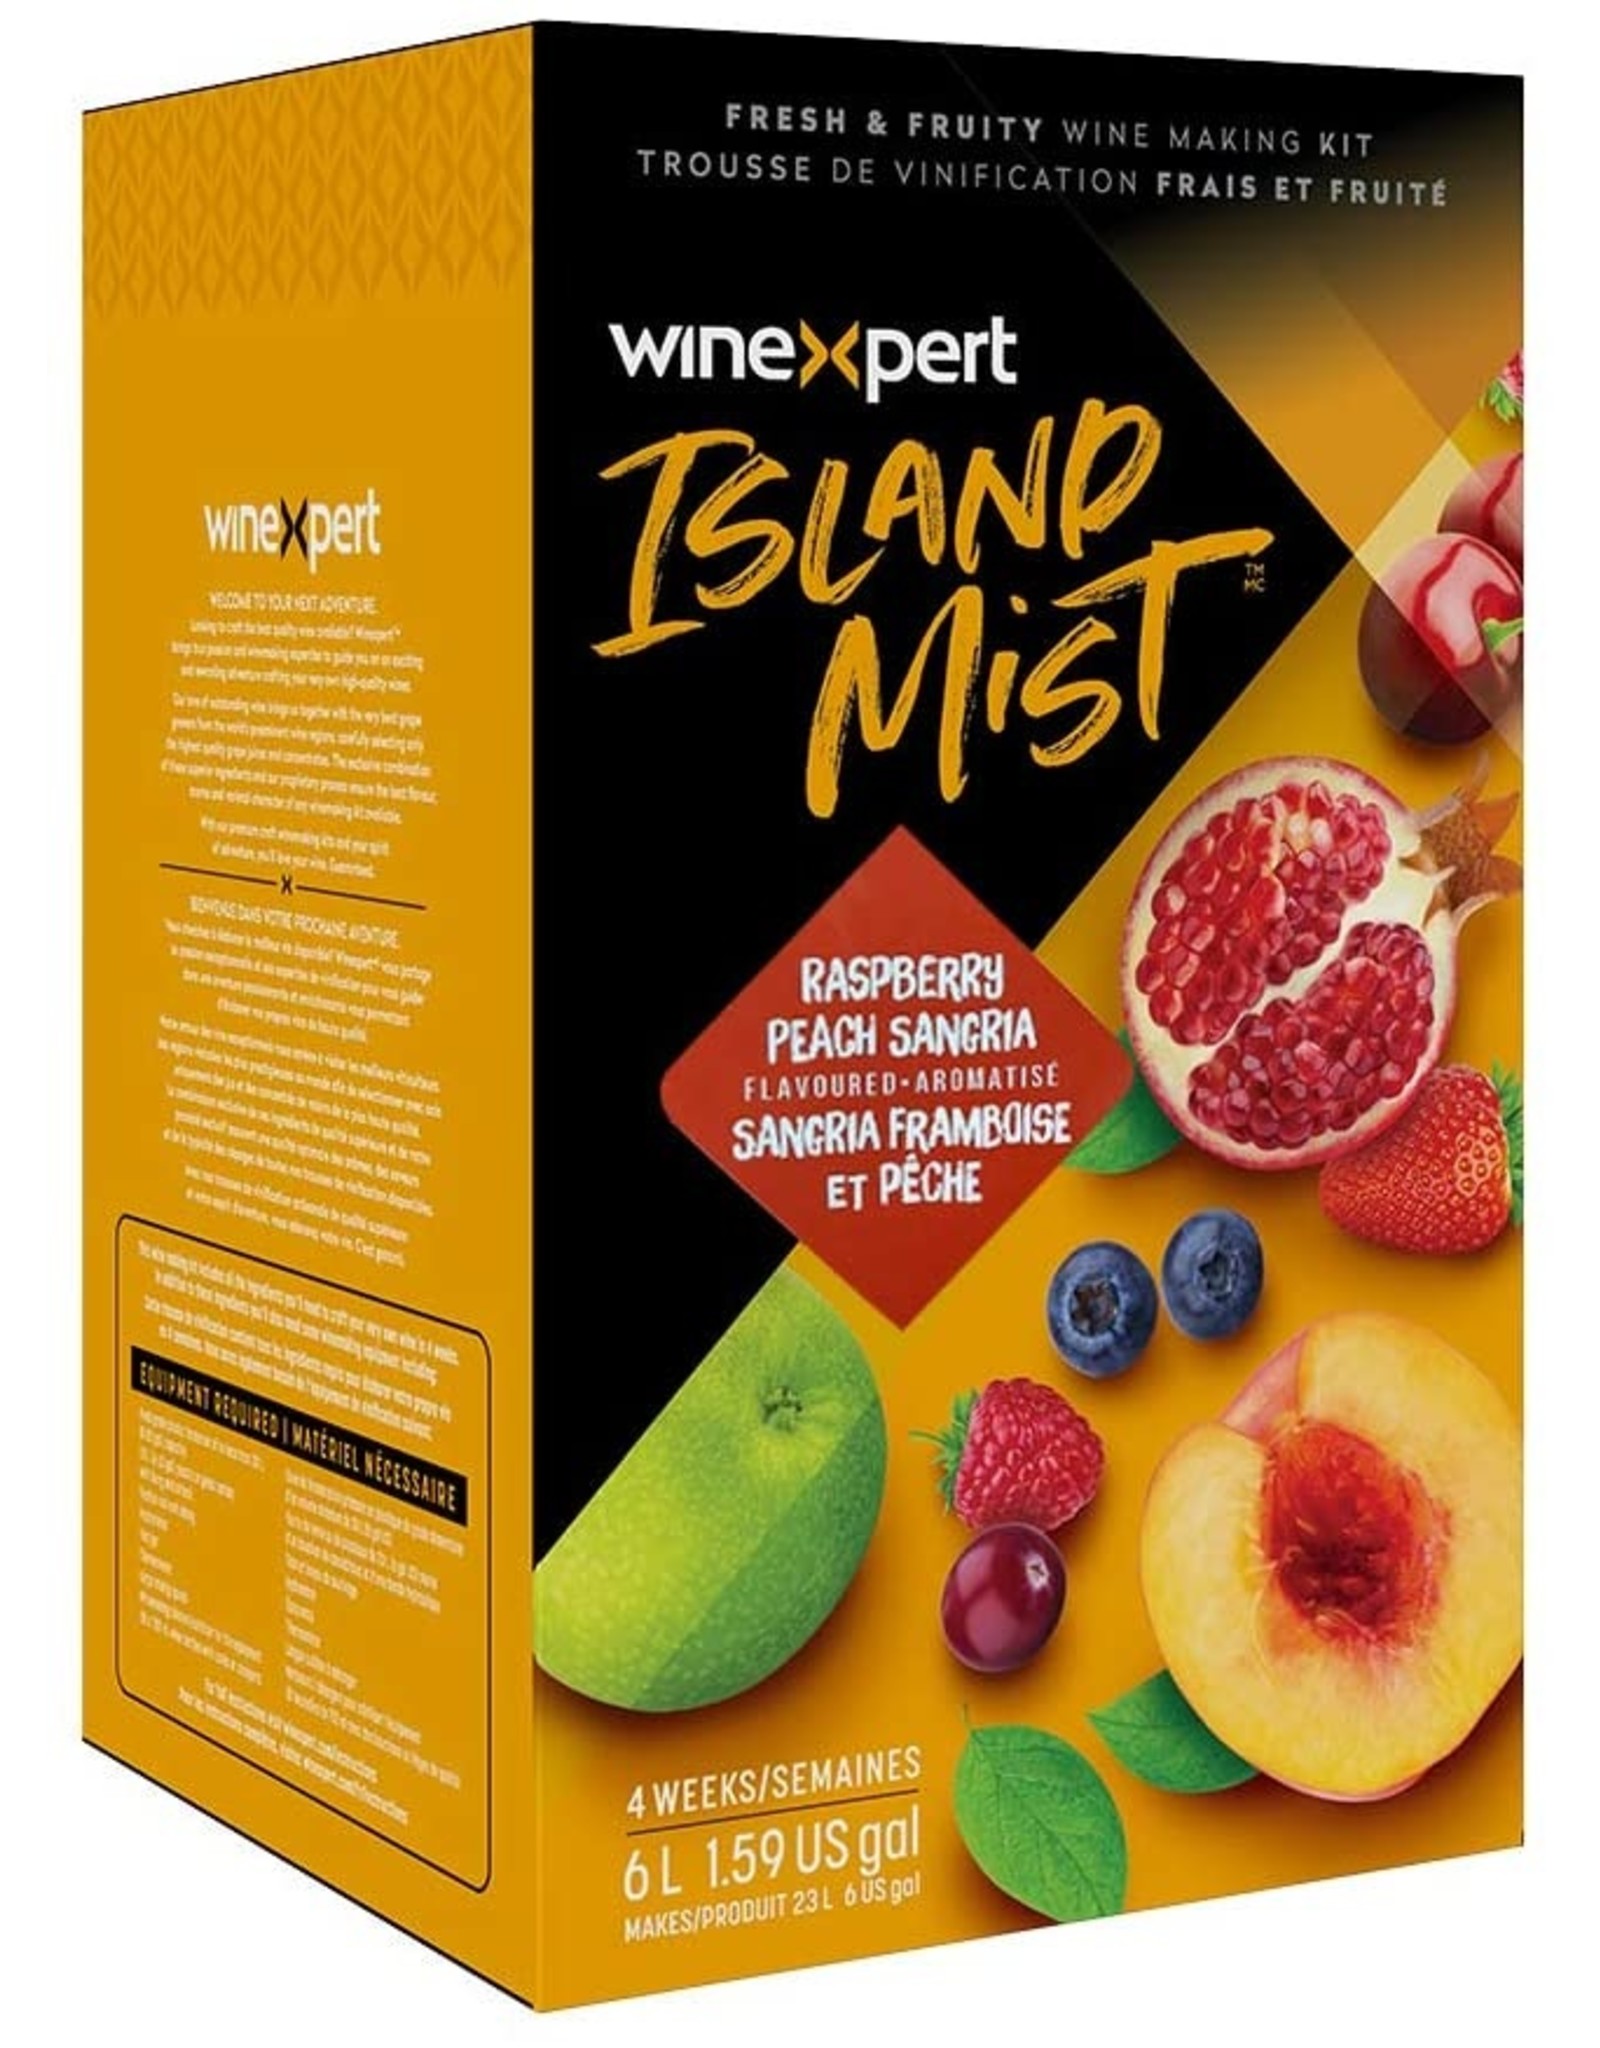 Island Mist Island Mist Winexpert 1.59 gal Raspberry Peach Sangria